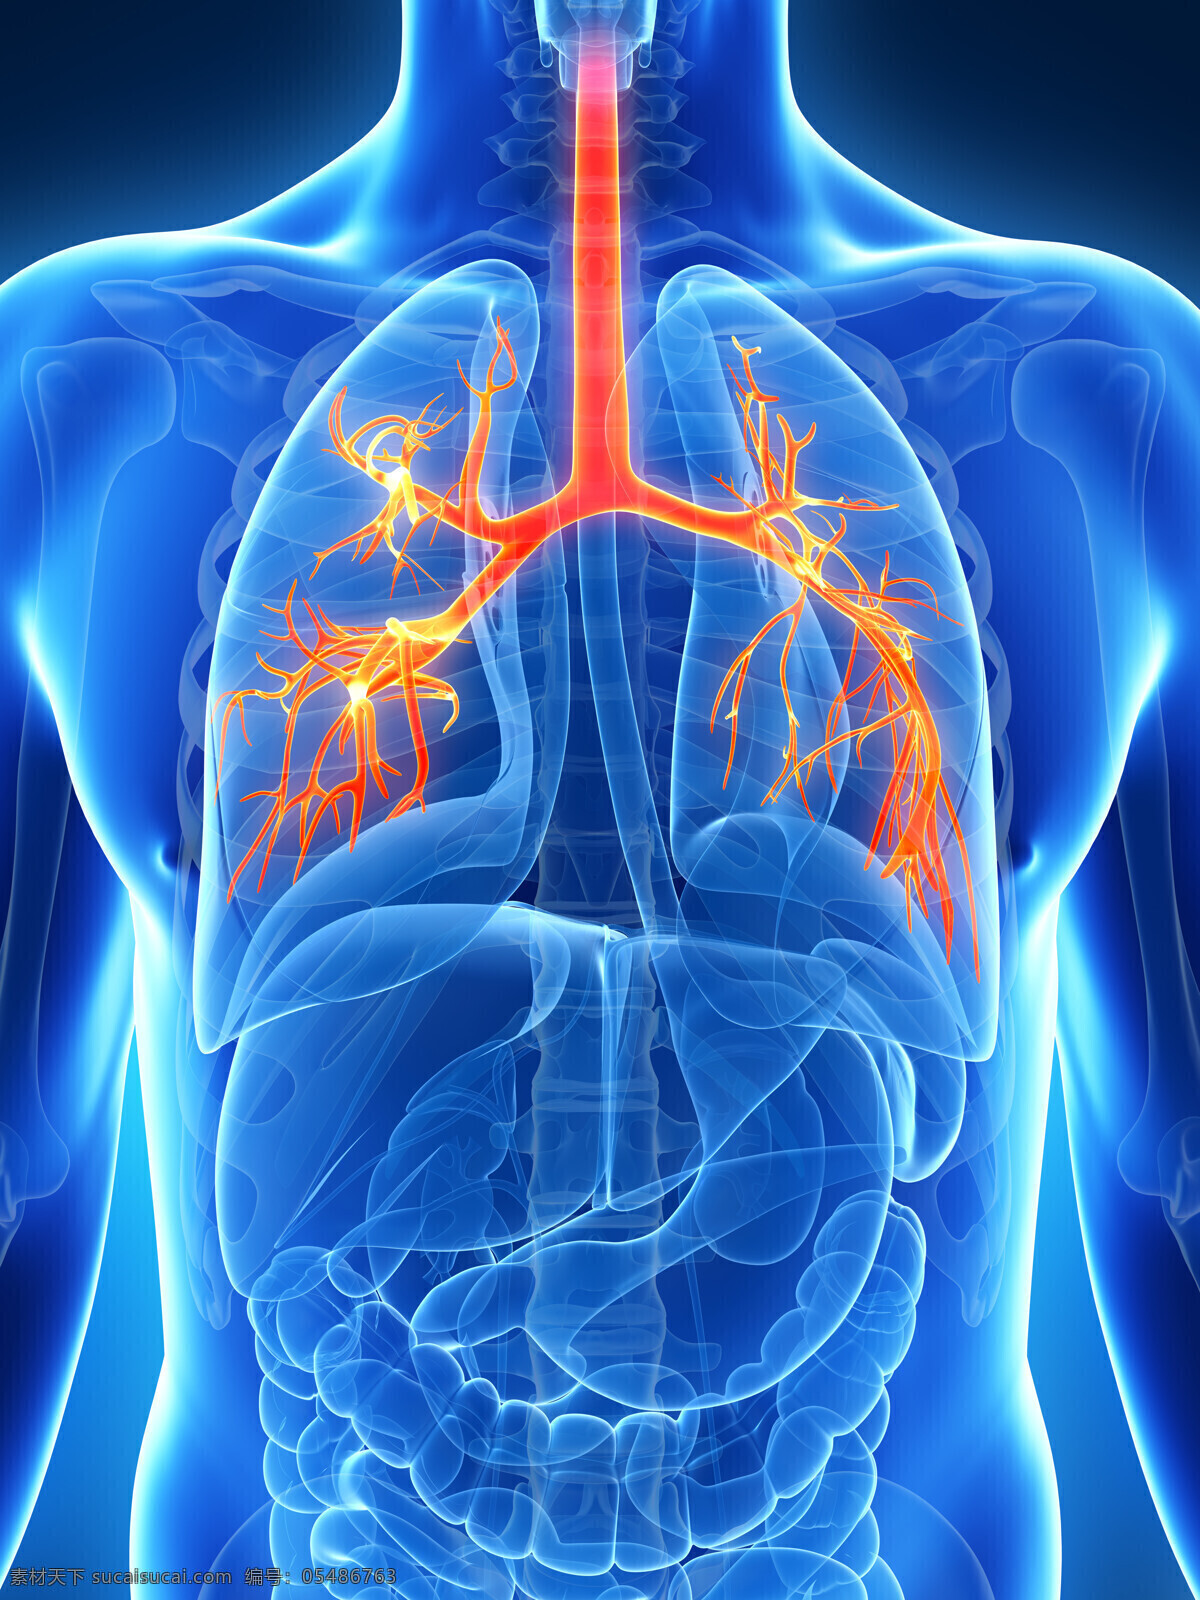 呼吸道 器官 心肺器官 呼吸道器官 内脏器官 人体器官 人体组织 医疗护理 现代科技